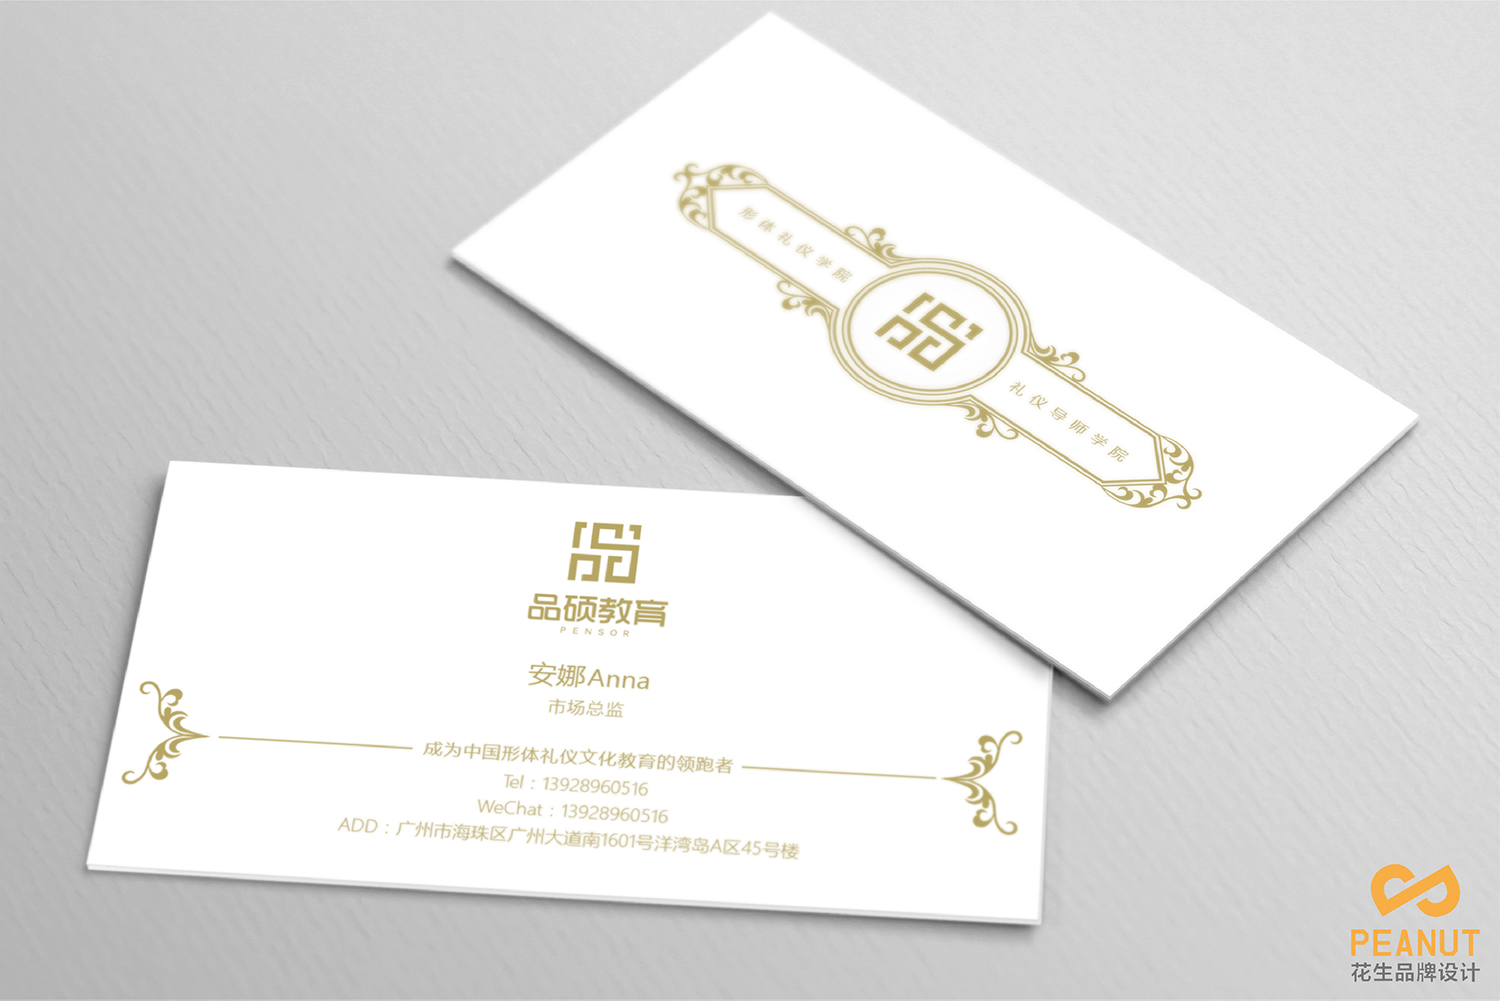 廣州品碩禮儀培訓品牌設計|廣州禮儀品牌設計公司-宣傳物料設計